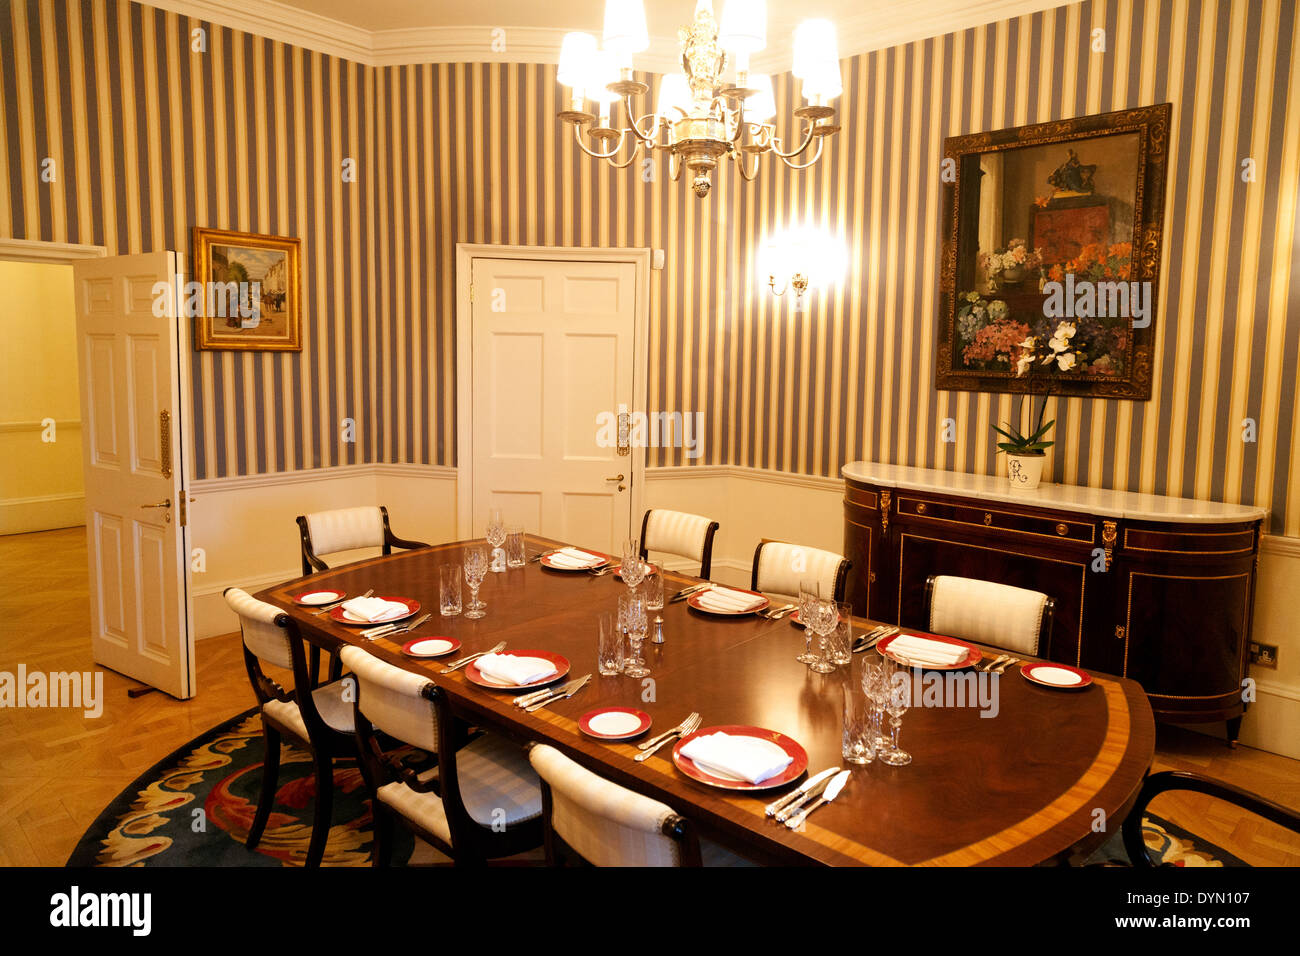 Le Prince de Galles, une suite de luxe dans le luxueux hôtel Ritz, Piccadilly, Londres W1 England UK Banque D'Images